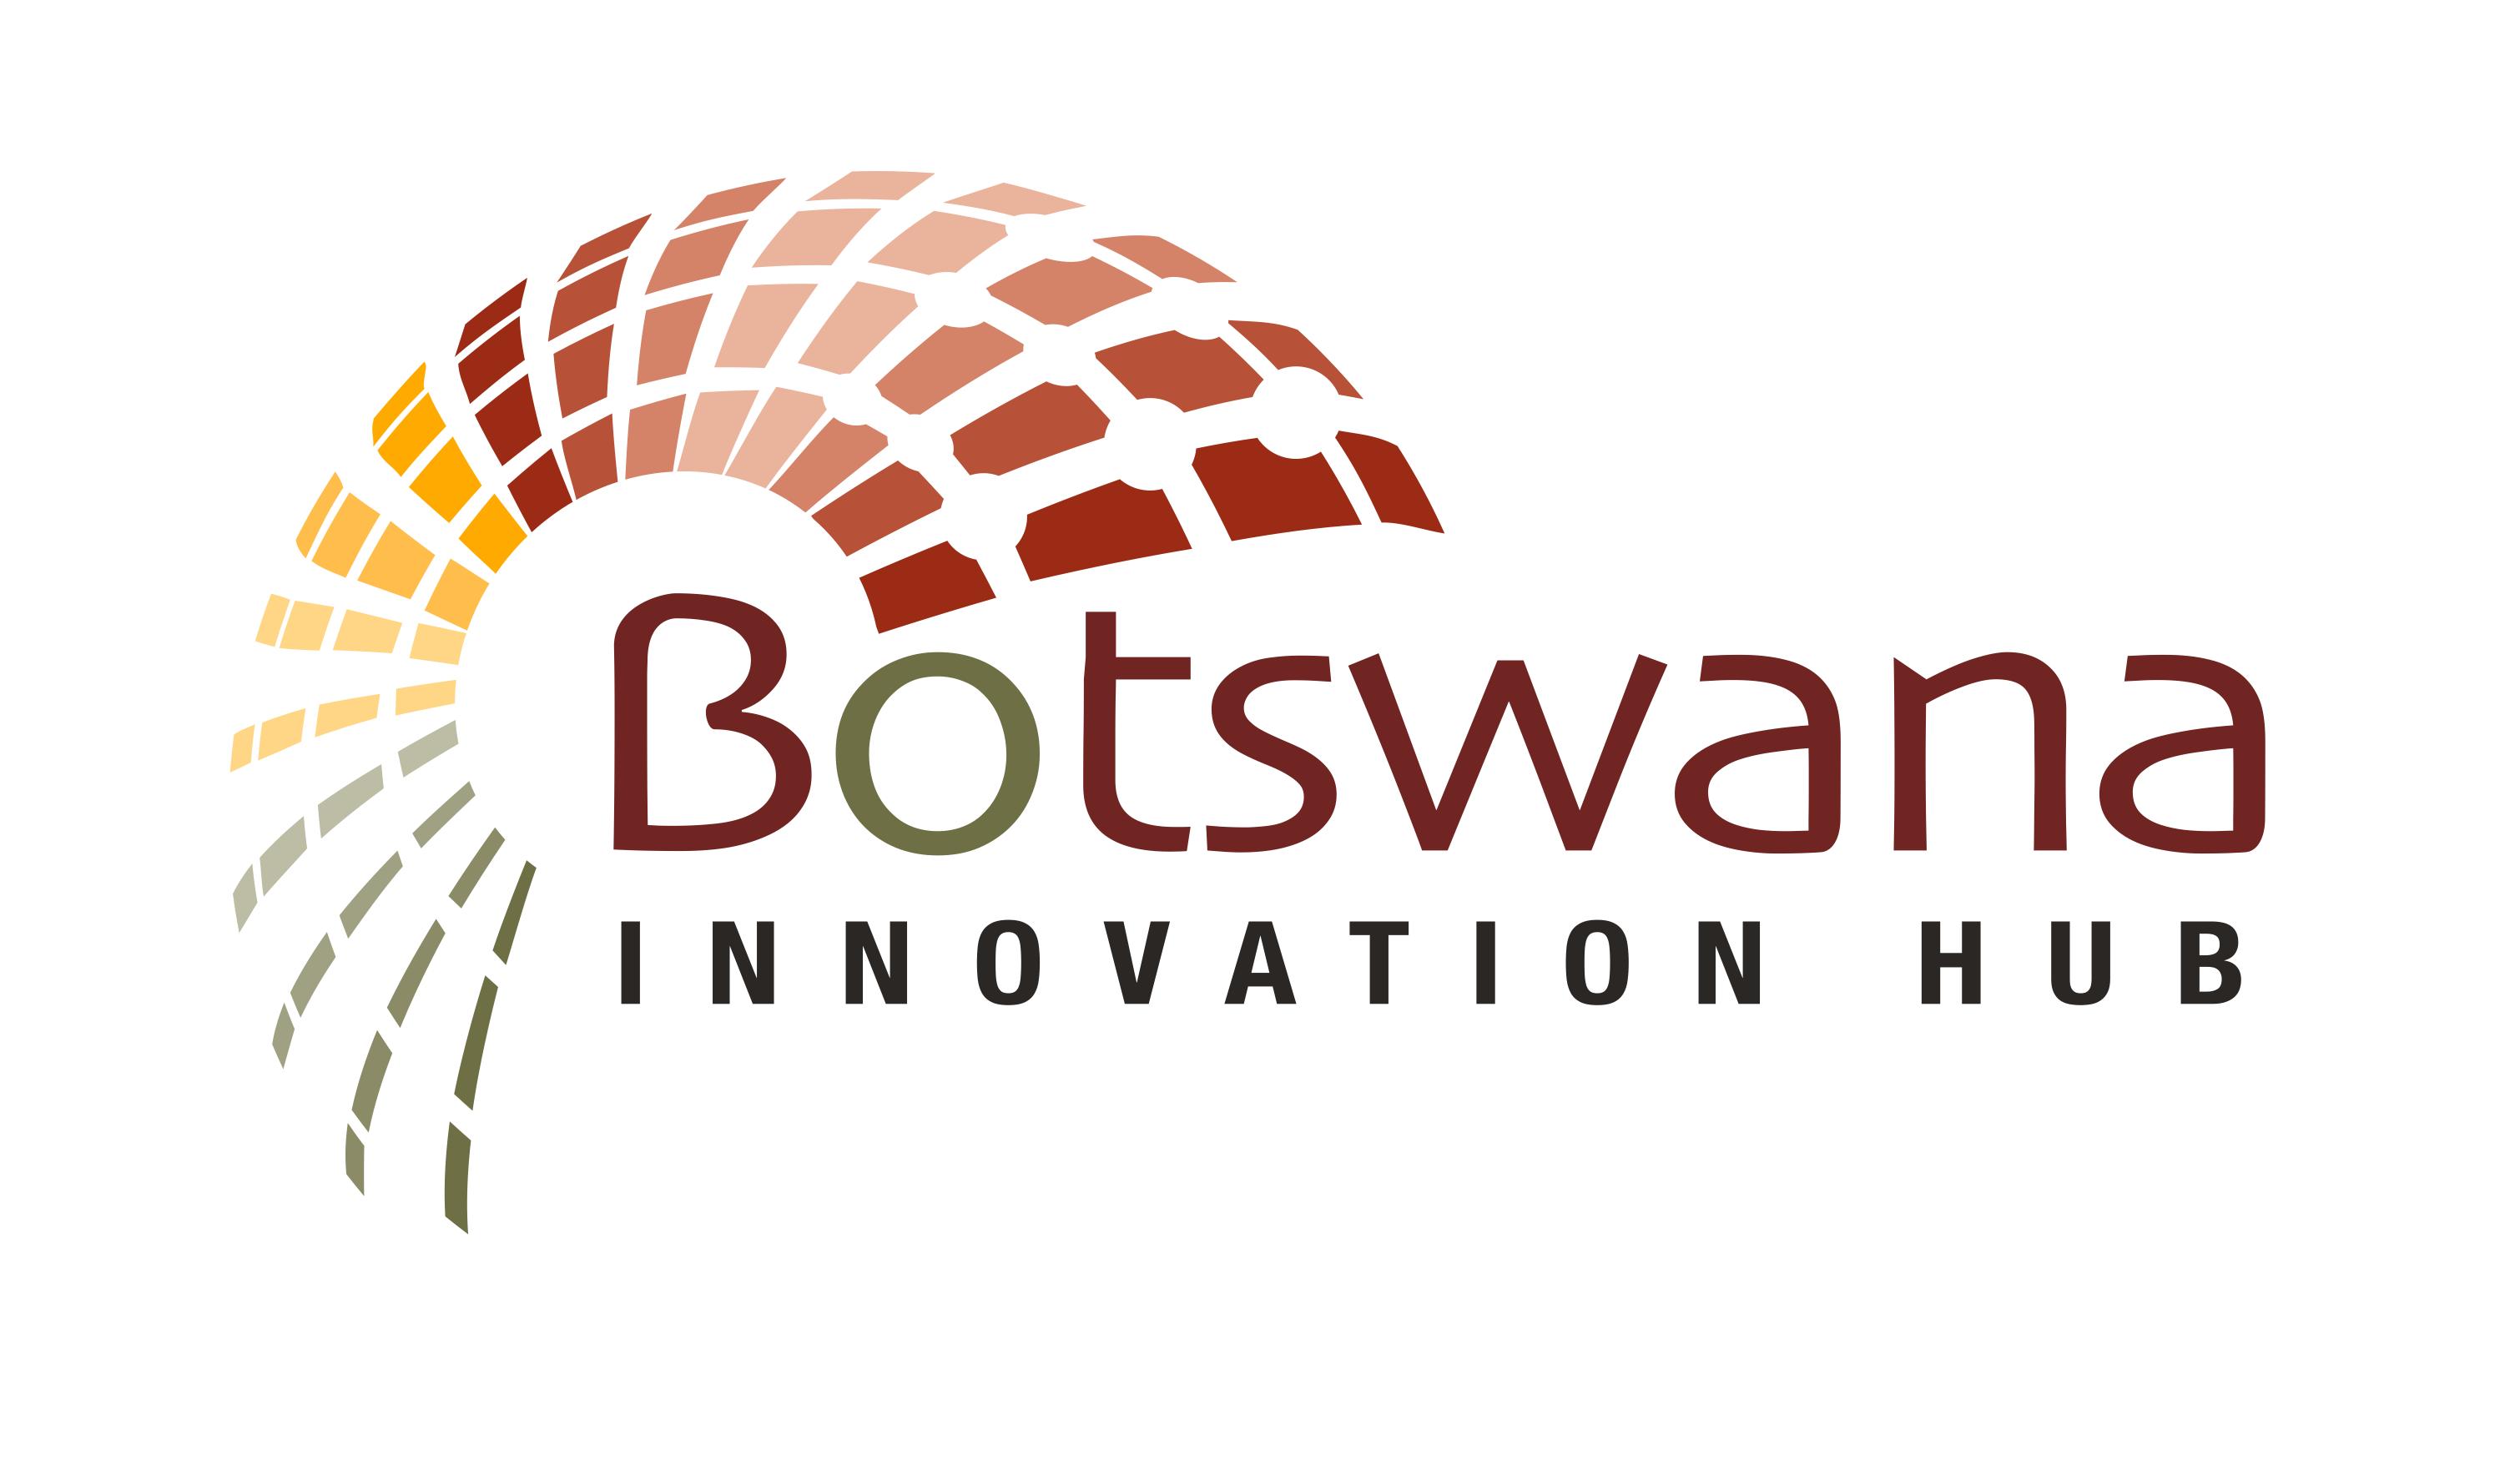 Botswana Innovation Hub